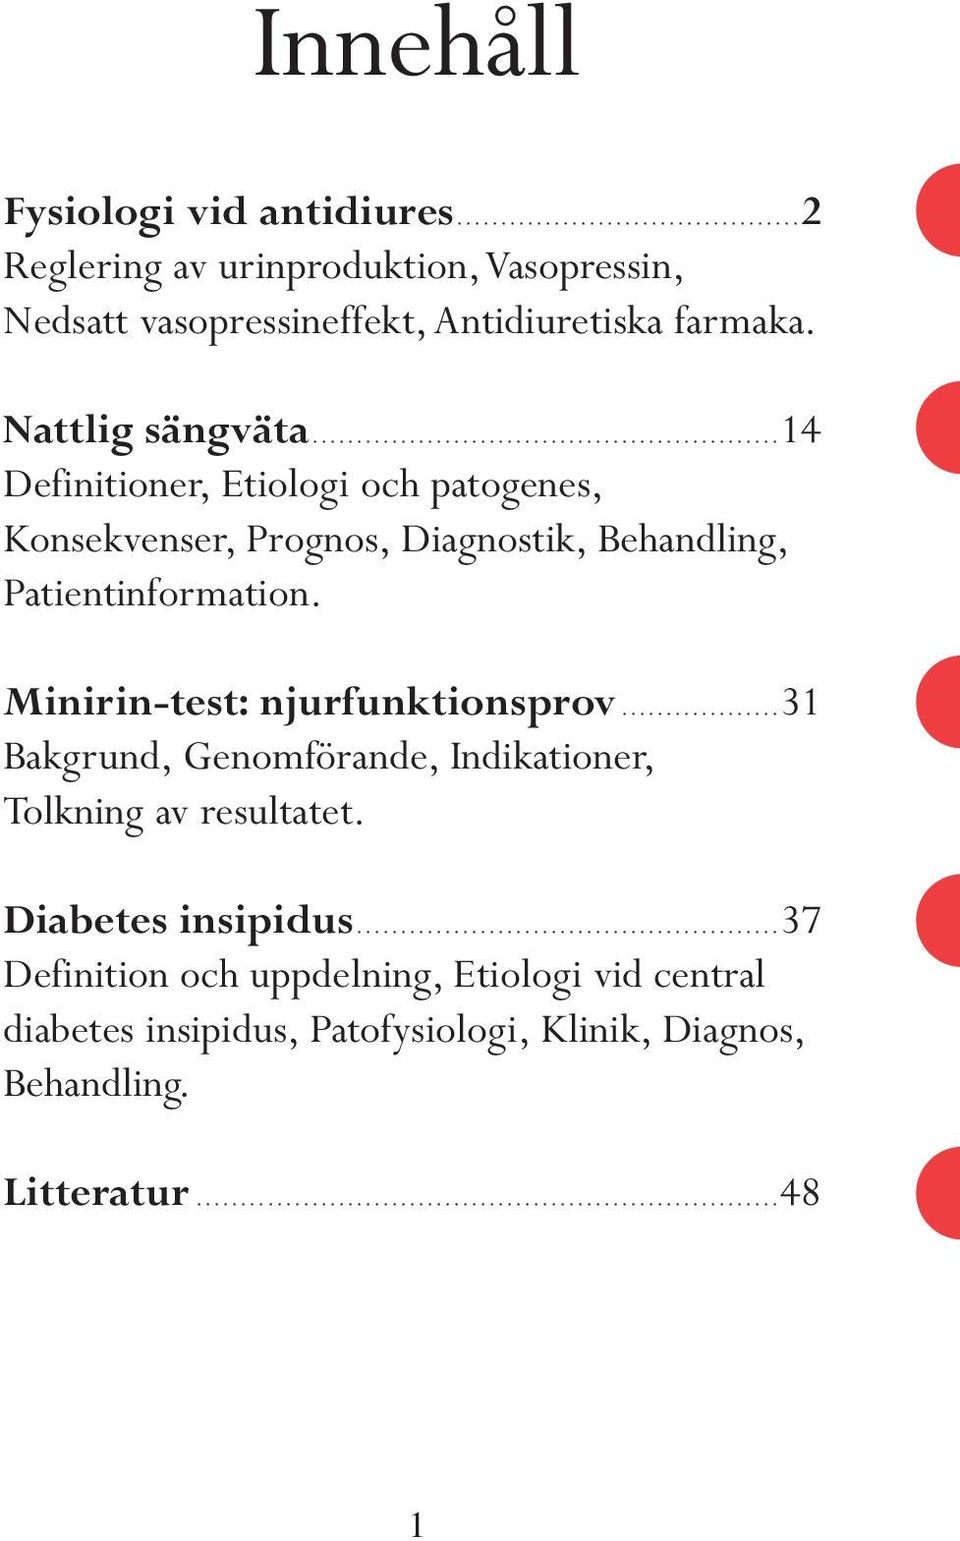 Minirin-test: njurfunktionsprov...31 Bakgrund, Genomförande, Indikationer, Tolkning av resultatet. Diabetes insipidus.